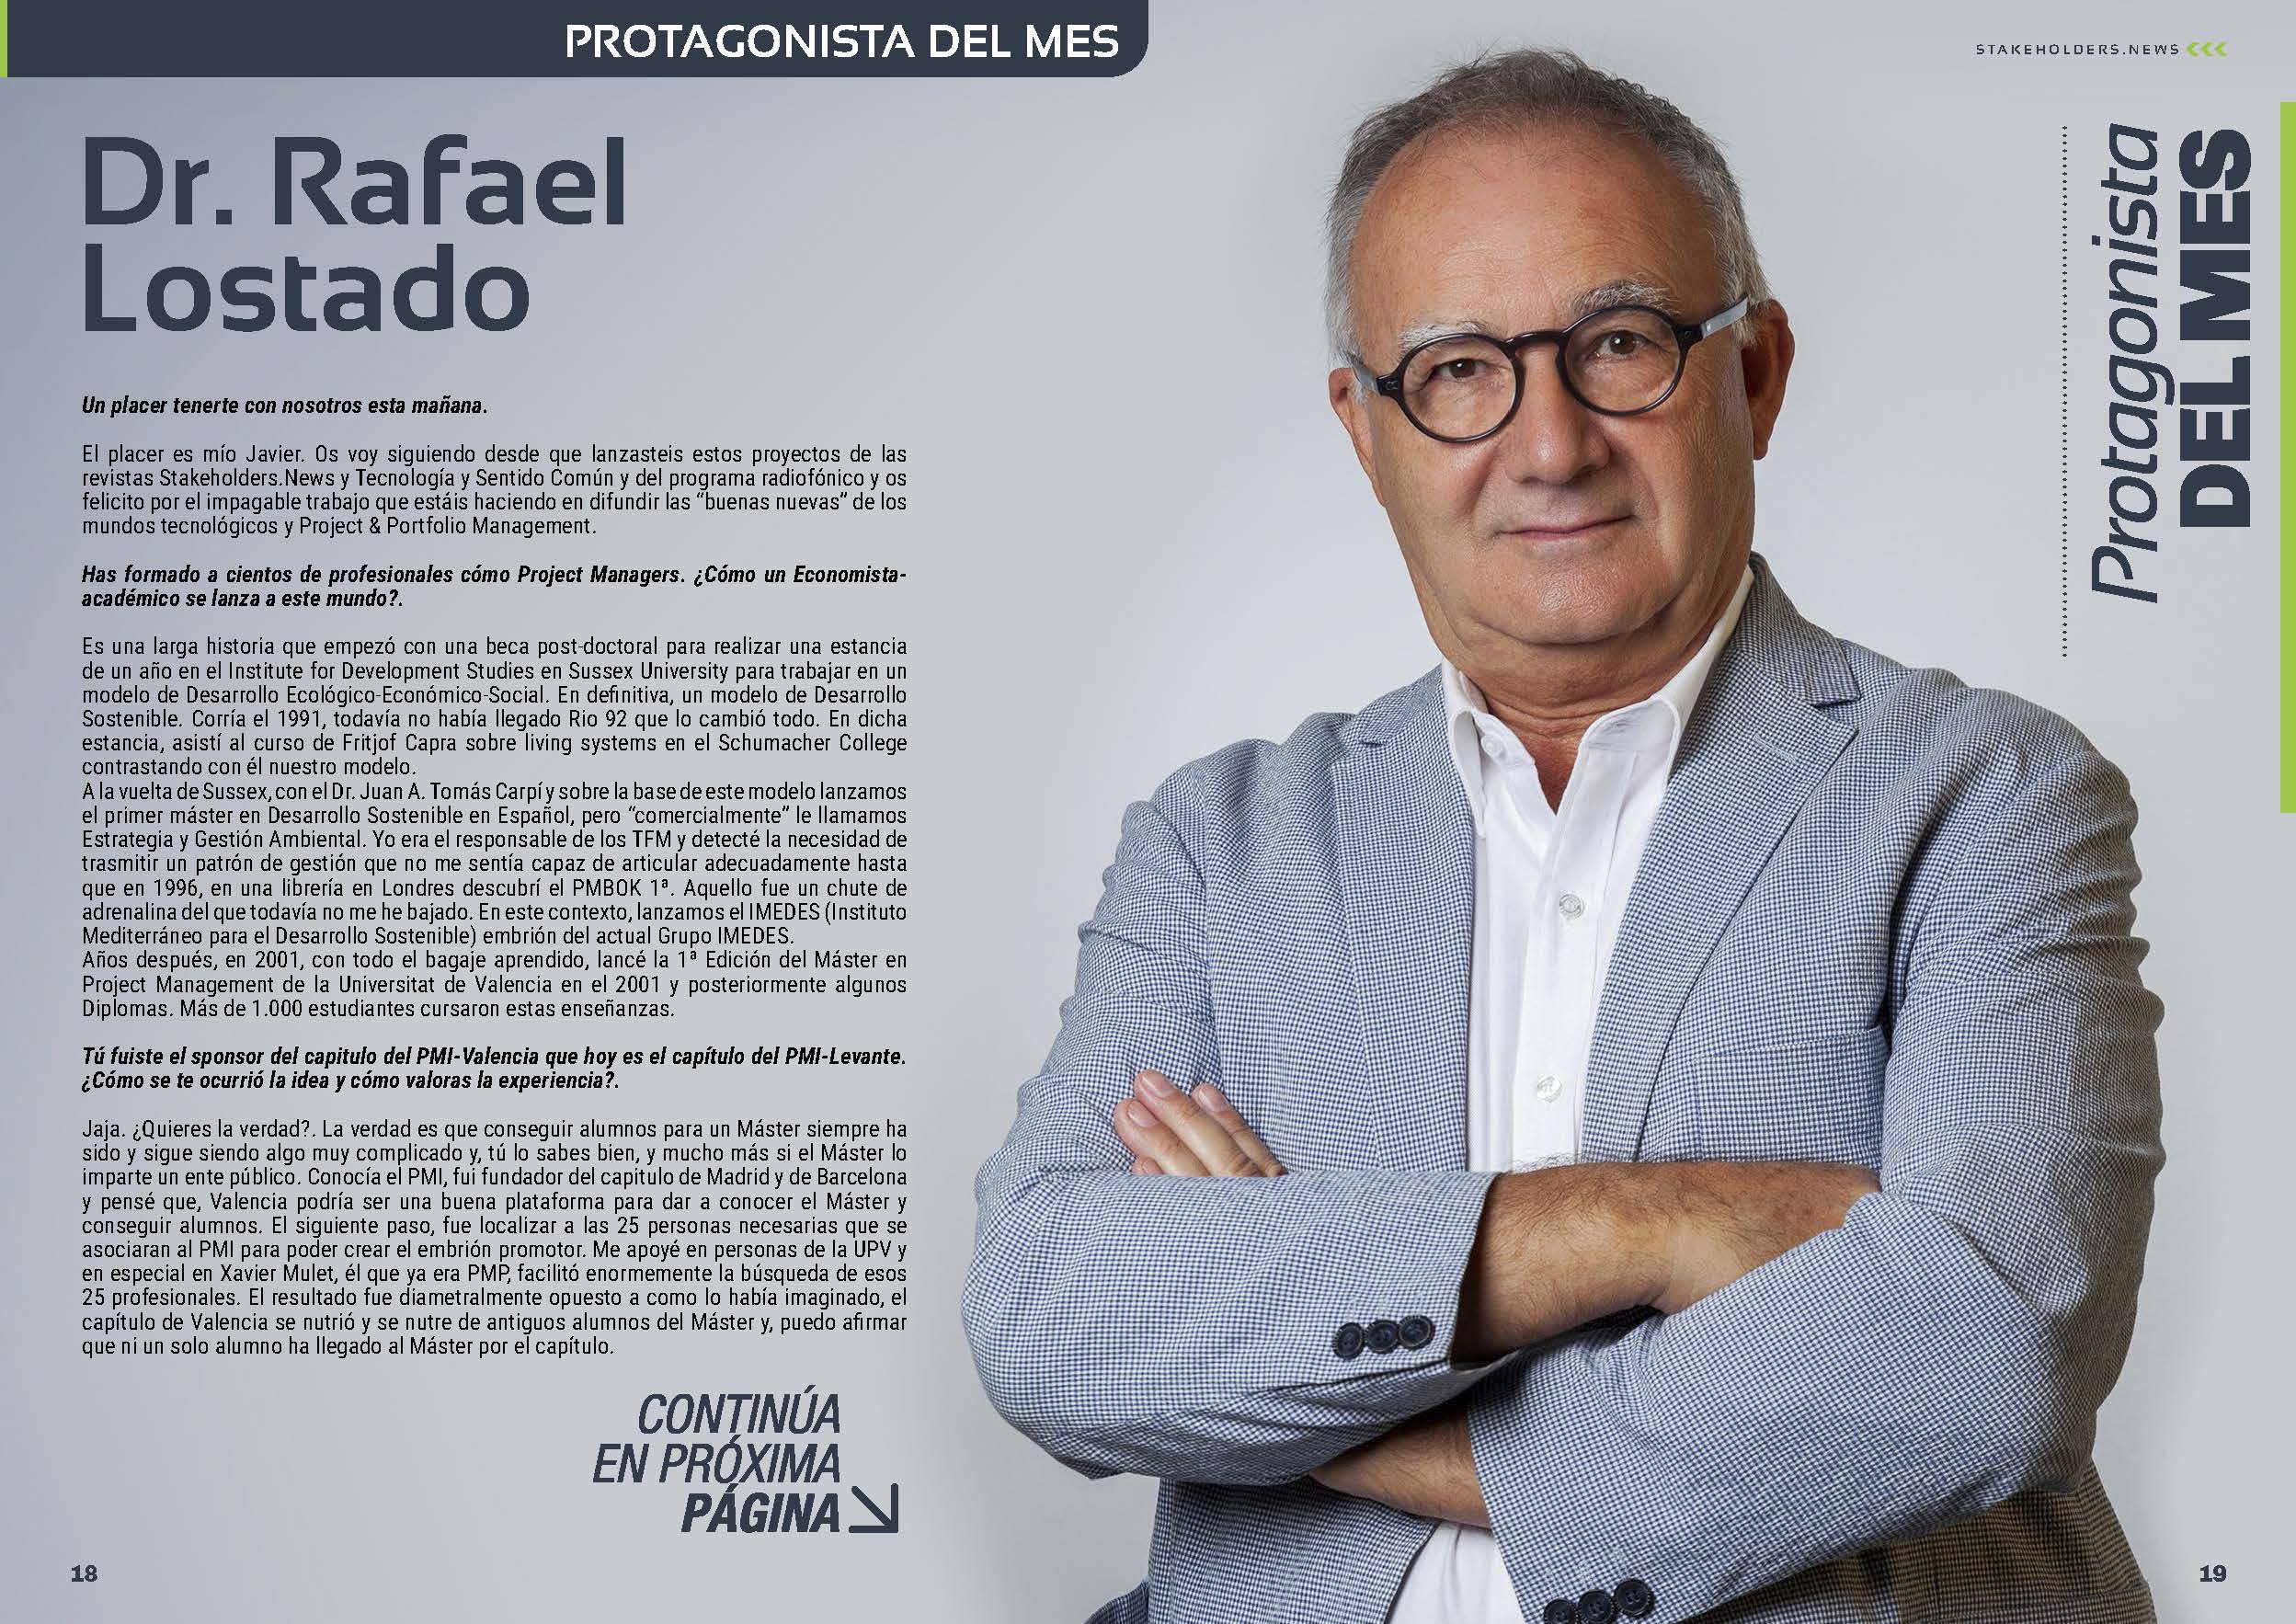 Rafael Lostado “Protagonista del Mes” de la Revista Stakeholders.news de octubre de 2022